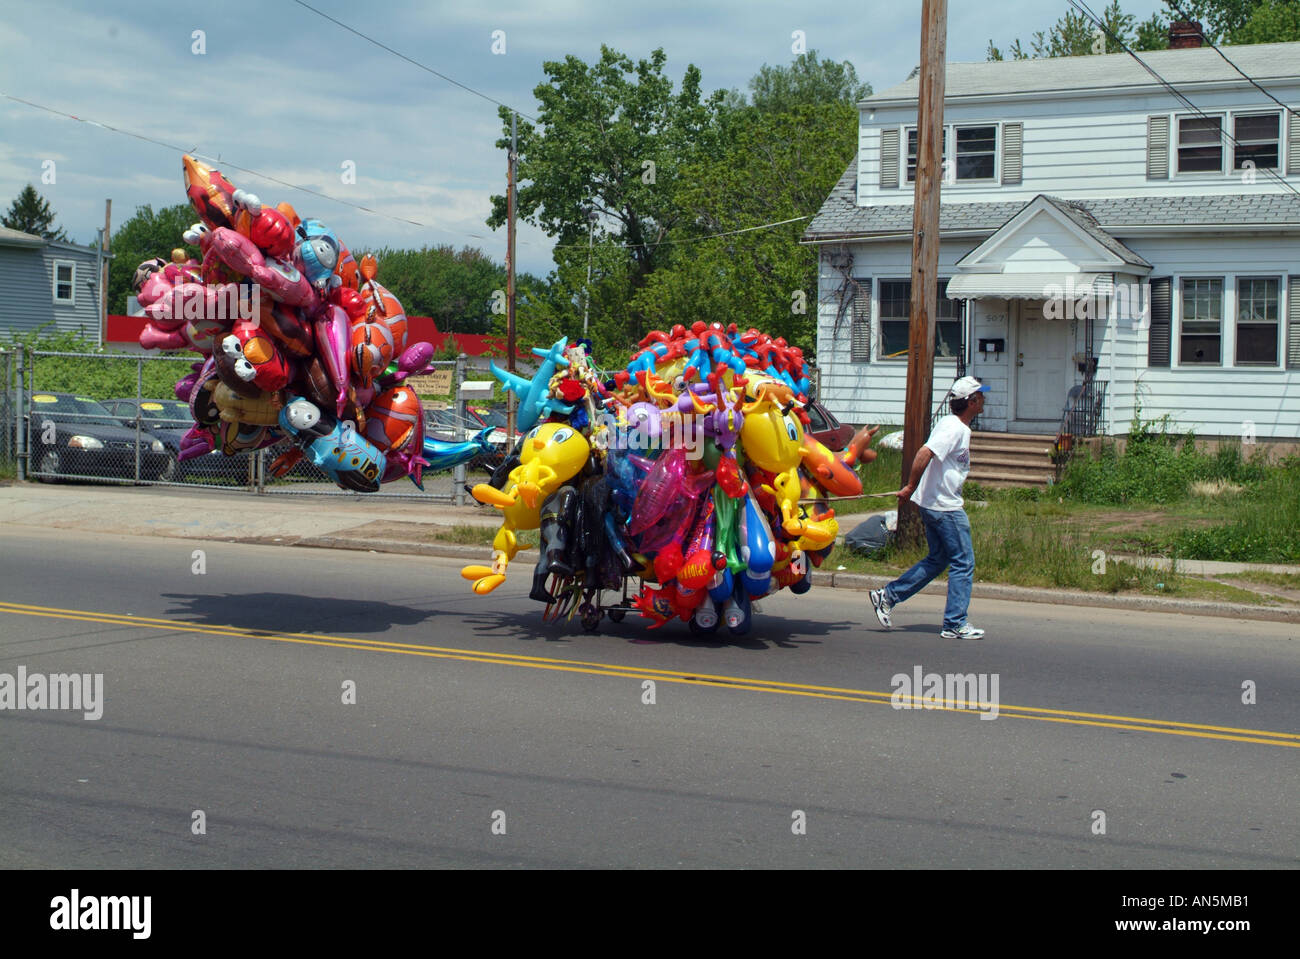 Parade toy seller Balloon man Stock Photo